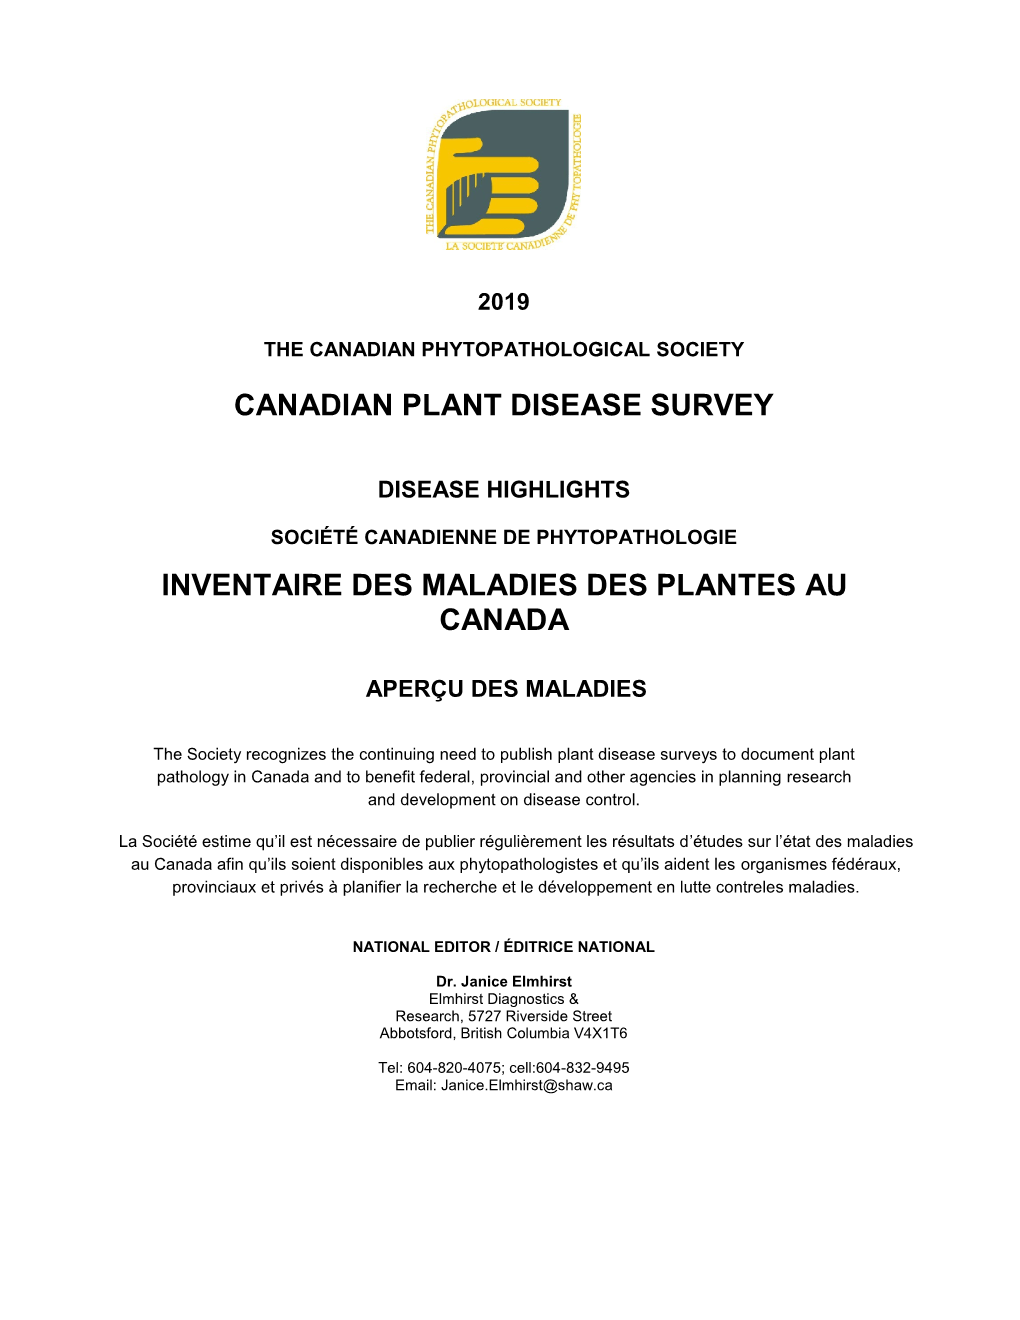 Canadian Plant Disease Survey Inventaire Des Maladies Des Plantes Au Canada